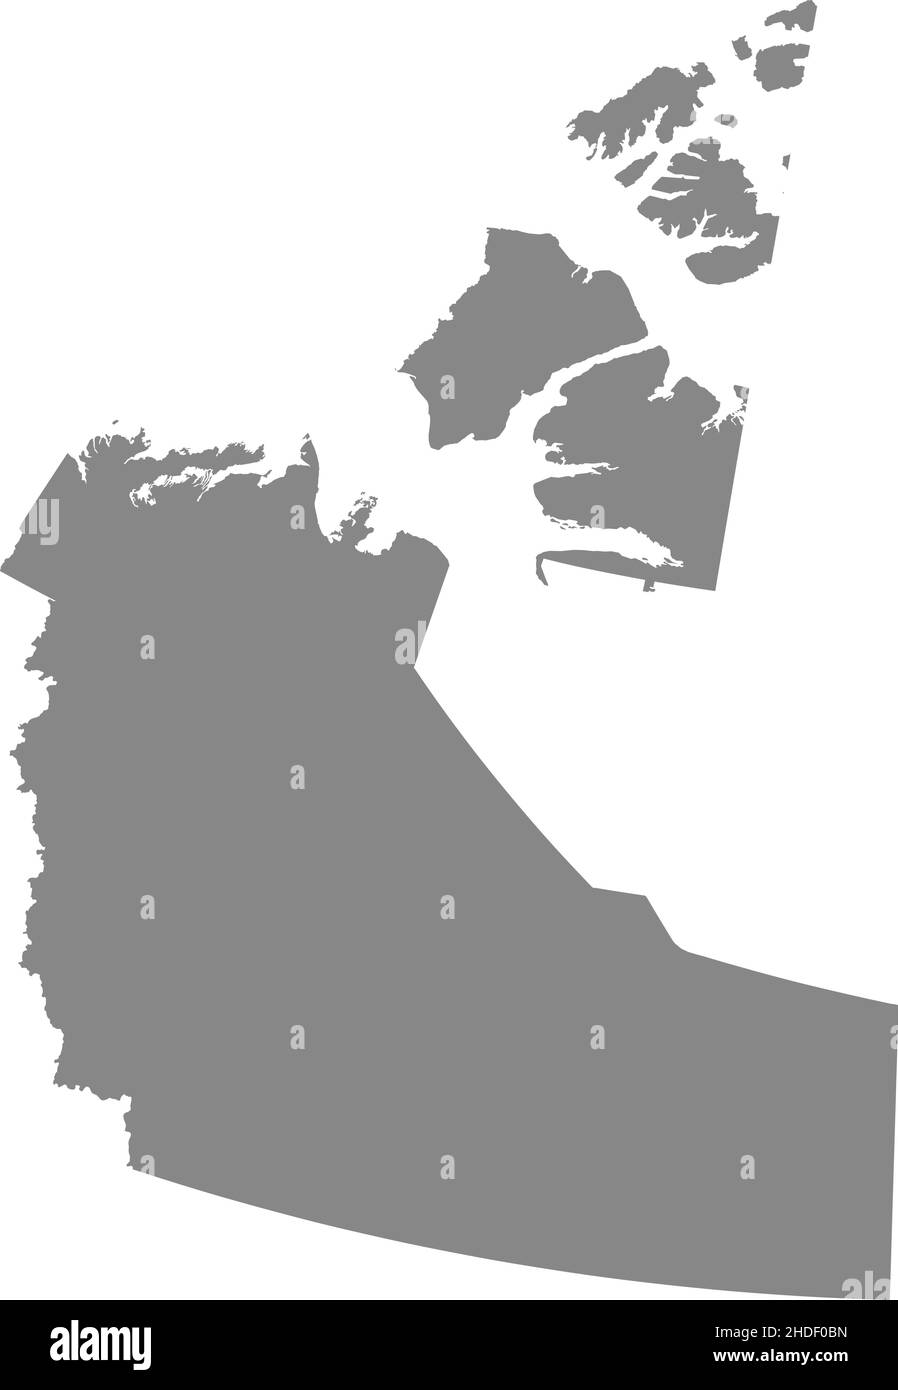 Grau flache leere Vektor-Verwaltungskarte des kanadischen Territoriums der NORDWESTLICHEN TERRITORIEN, KANADA Stock Vektor